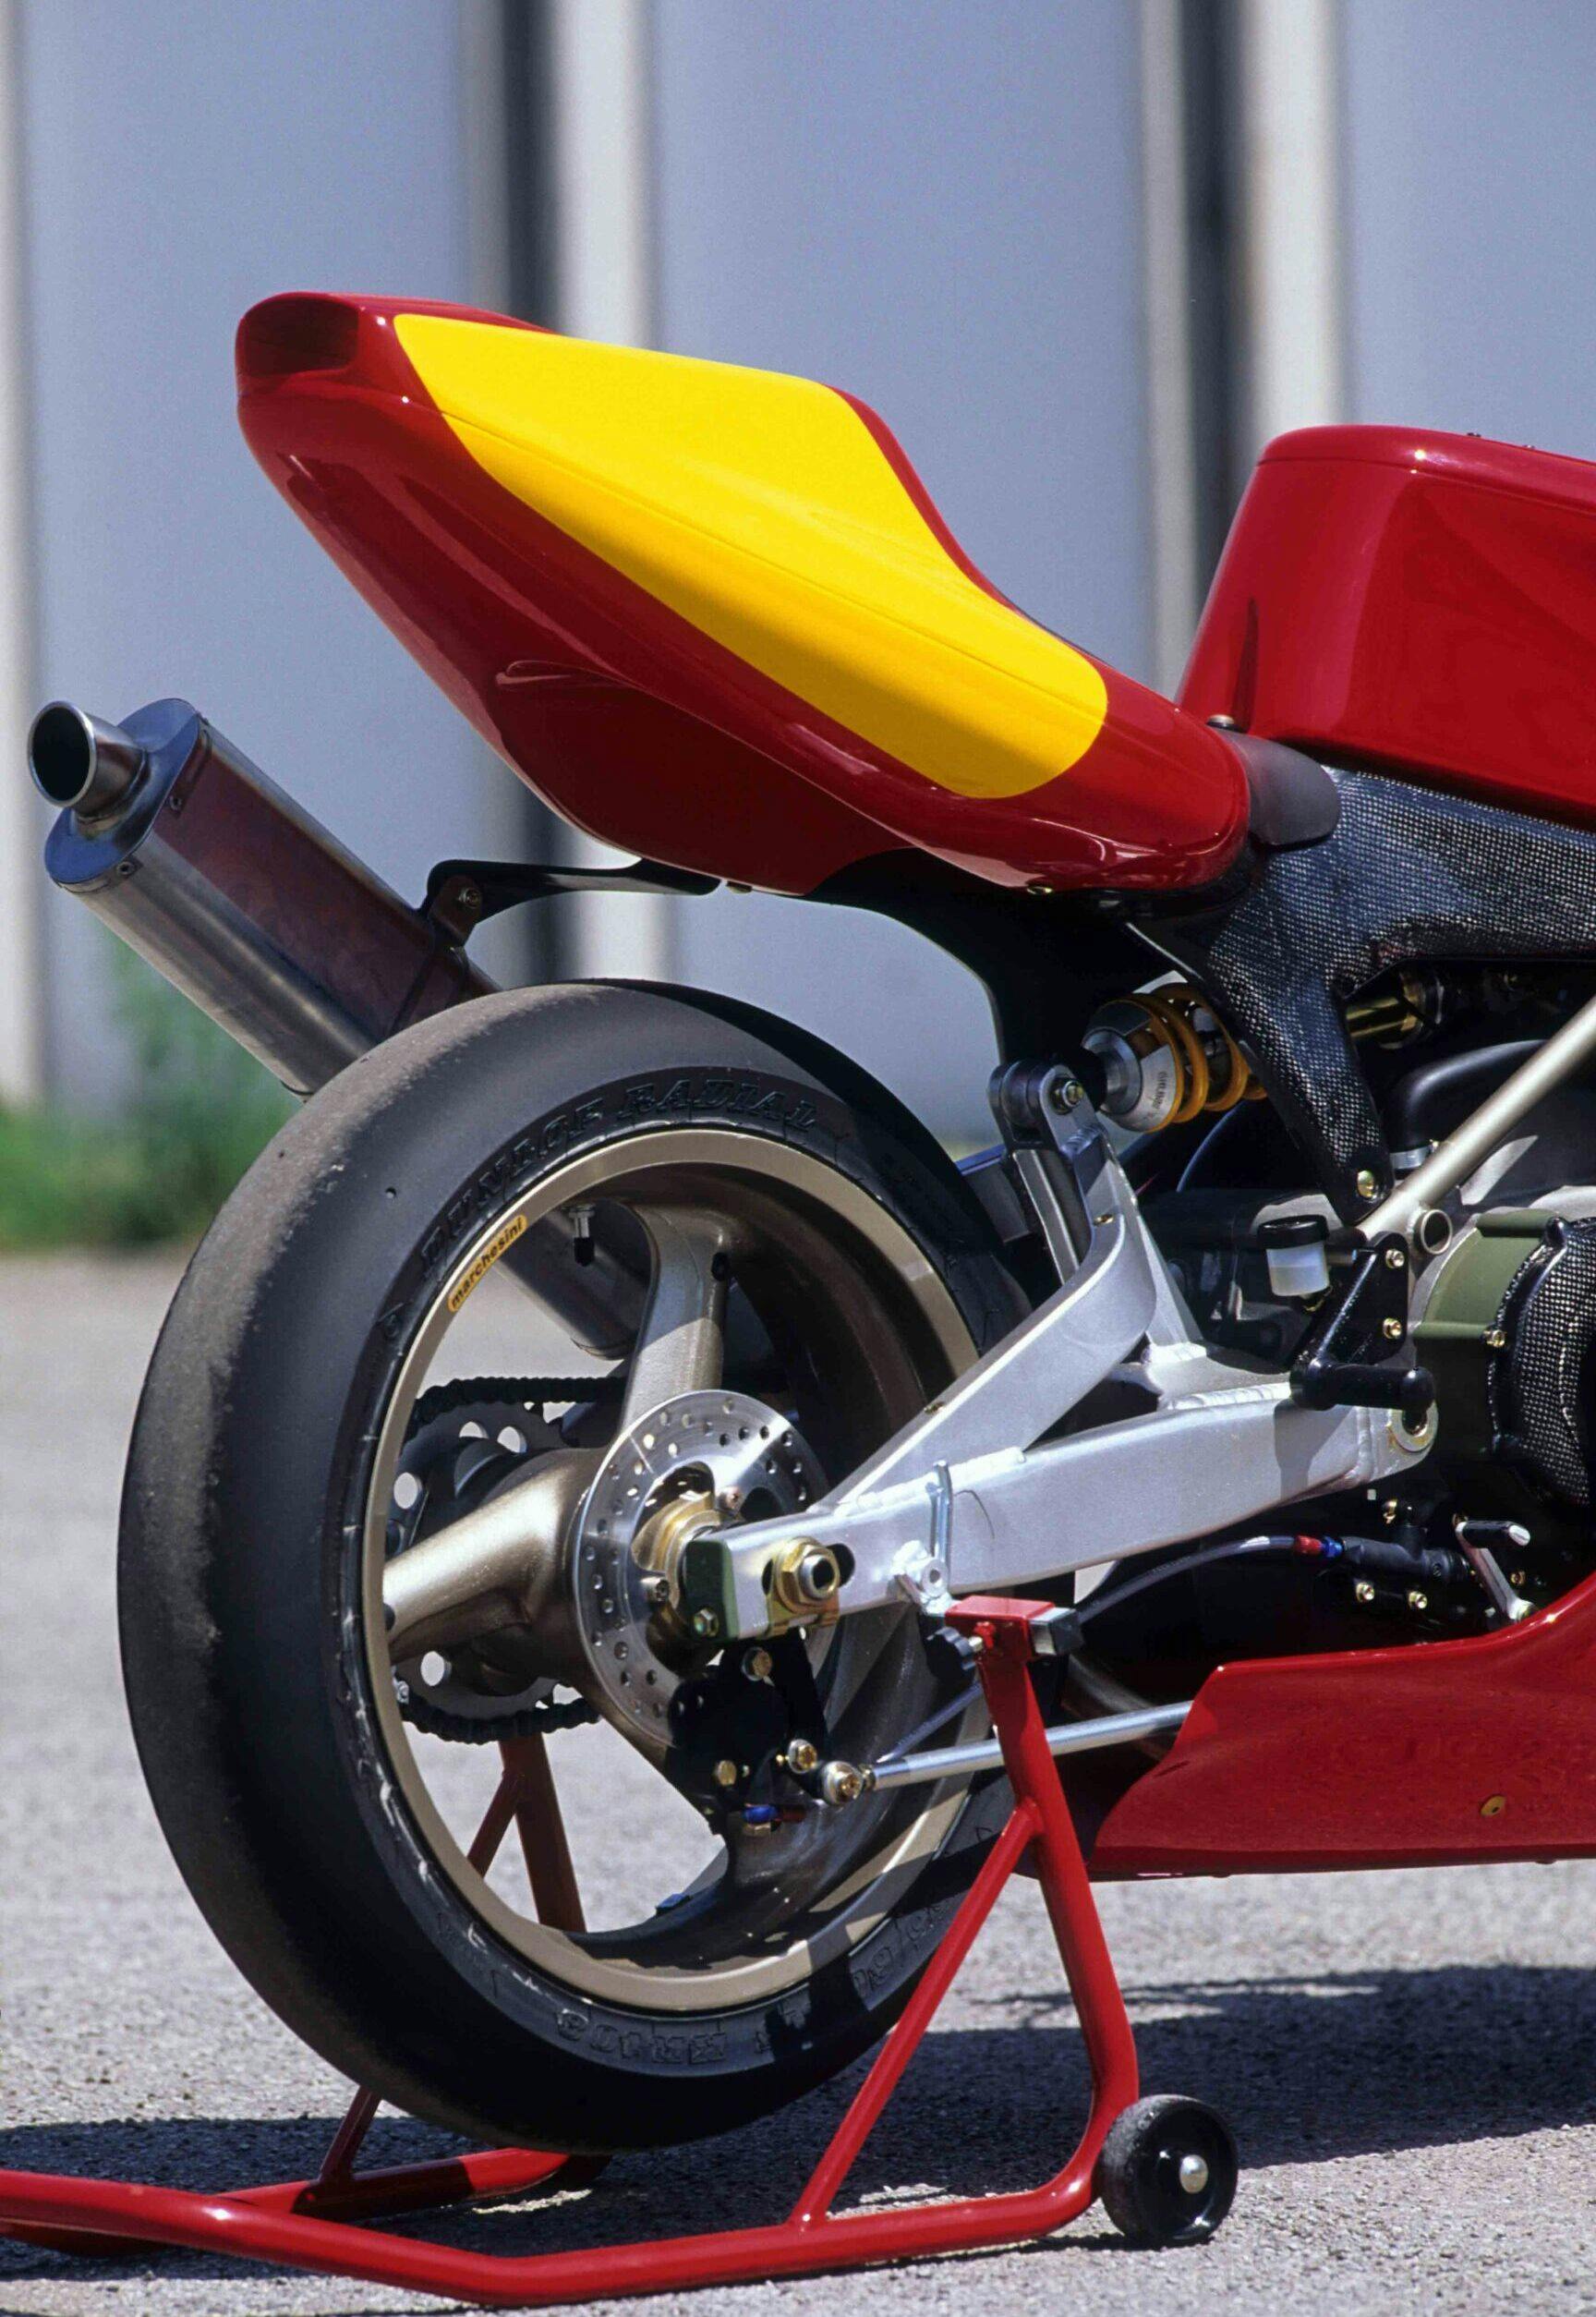 Ducati Supermono single rear wheel tire suspension